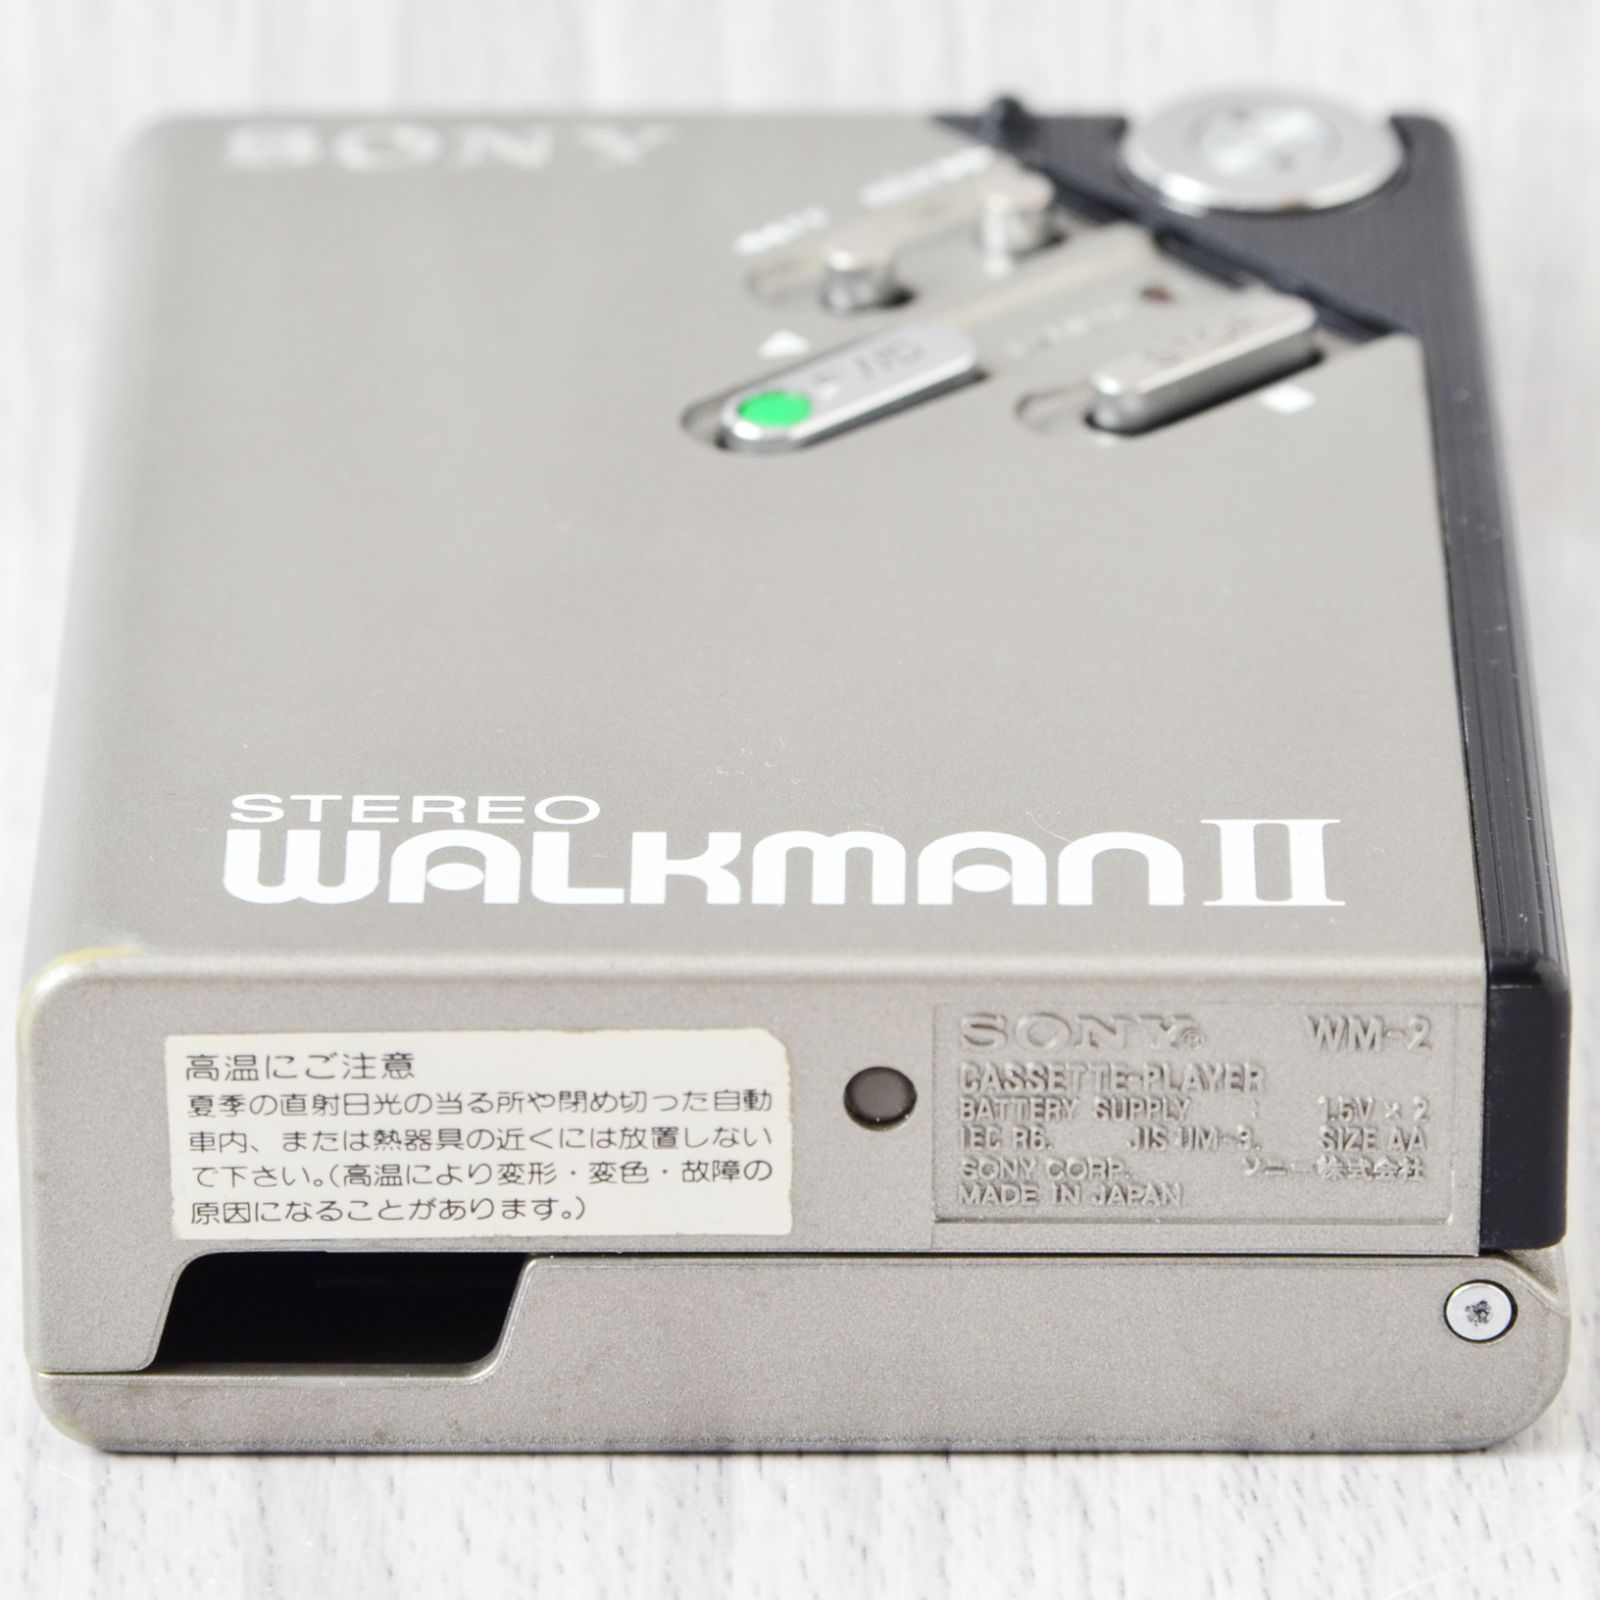 日本製造美品! SONY WALKMAN WM-2 カセットウォークマン 黒 ケース付 ポータブルプレーヤー